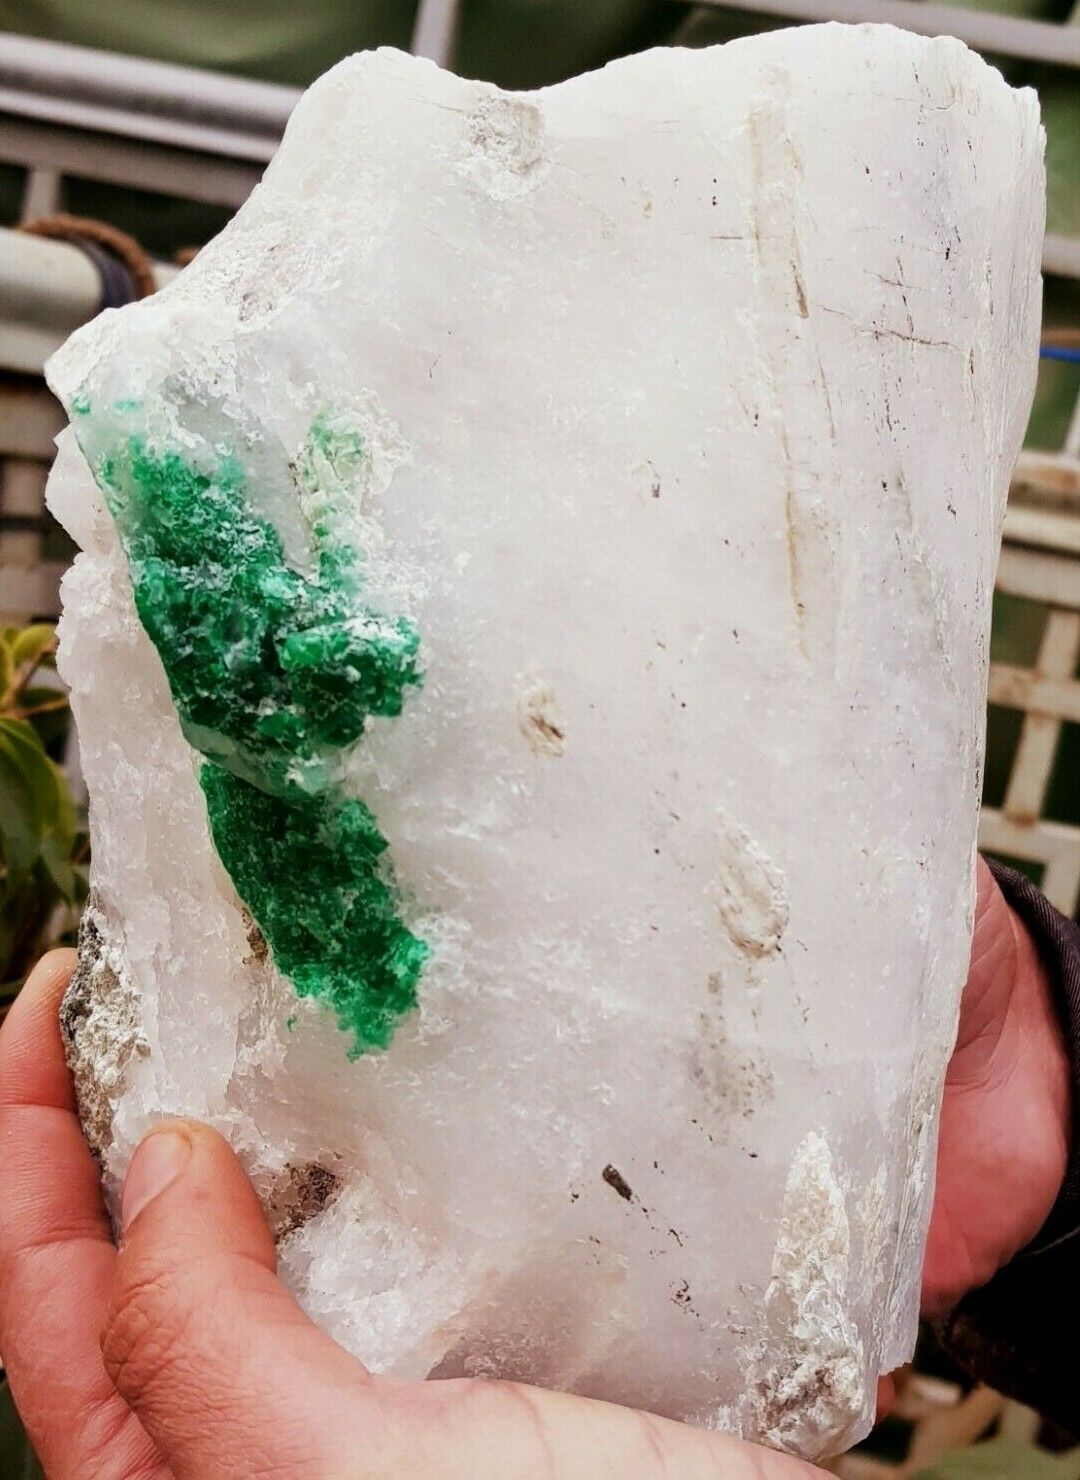 4kg 60gm Museum Collection Grade Jambo Emerald Crystals Bunch Specimen @ Swat,PK